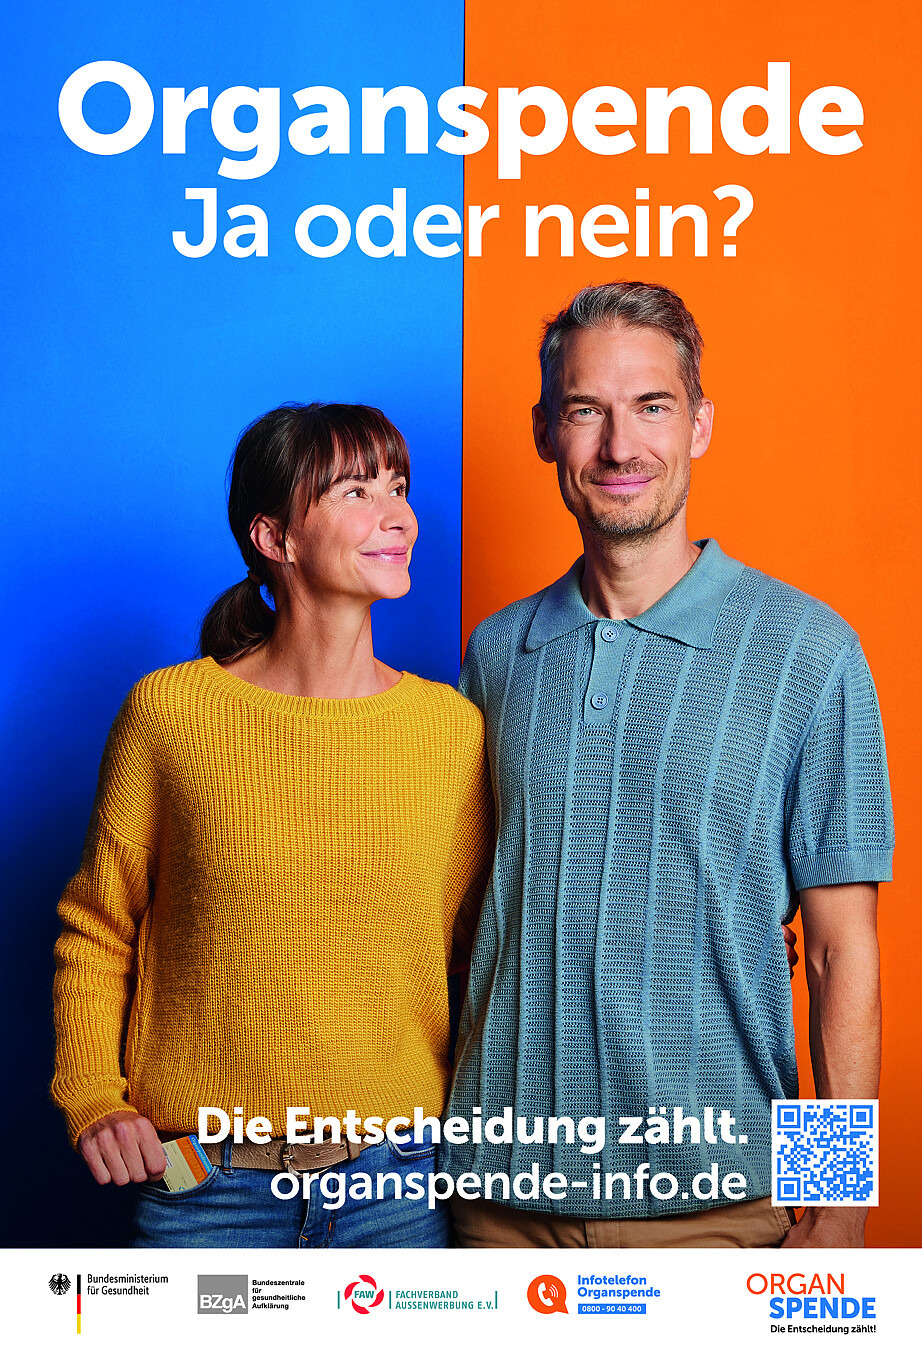 Kampagnenmotiv im Hochformat mit einem Mann, der den Arm um eine Frau gelegt hat, die ihn lächelnd anschaut. 